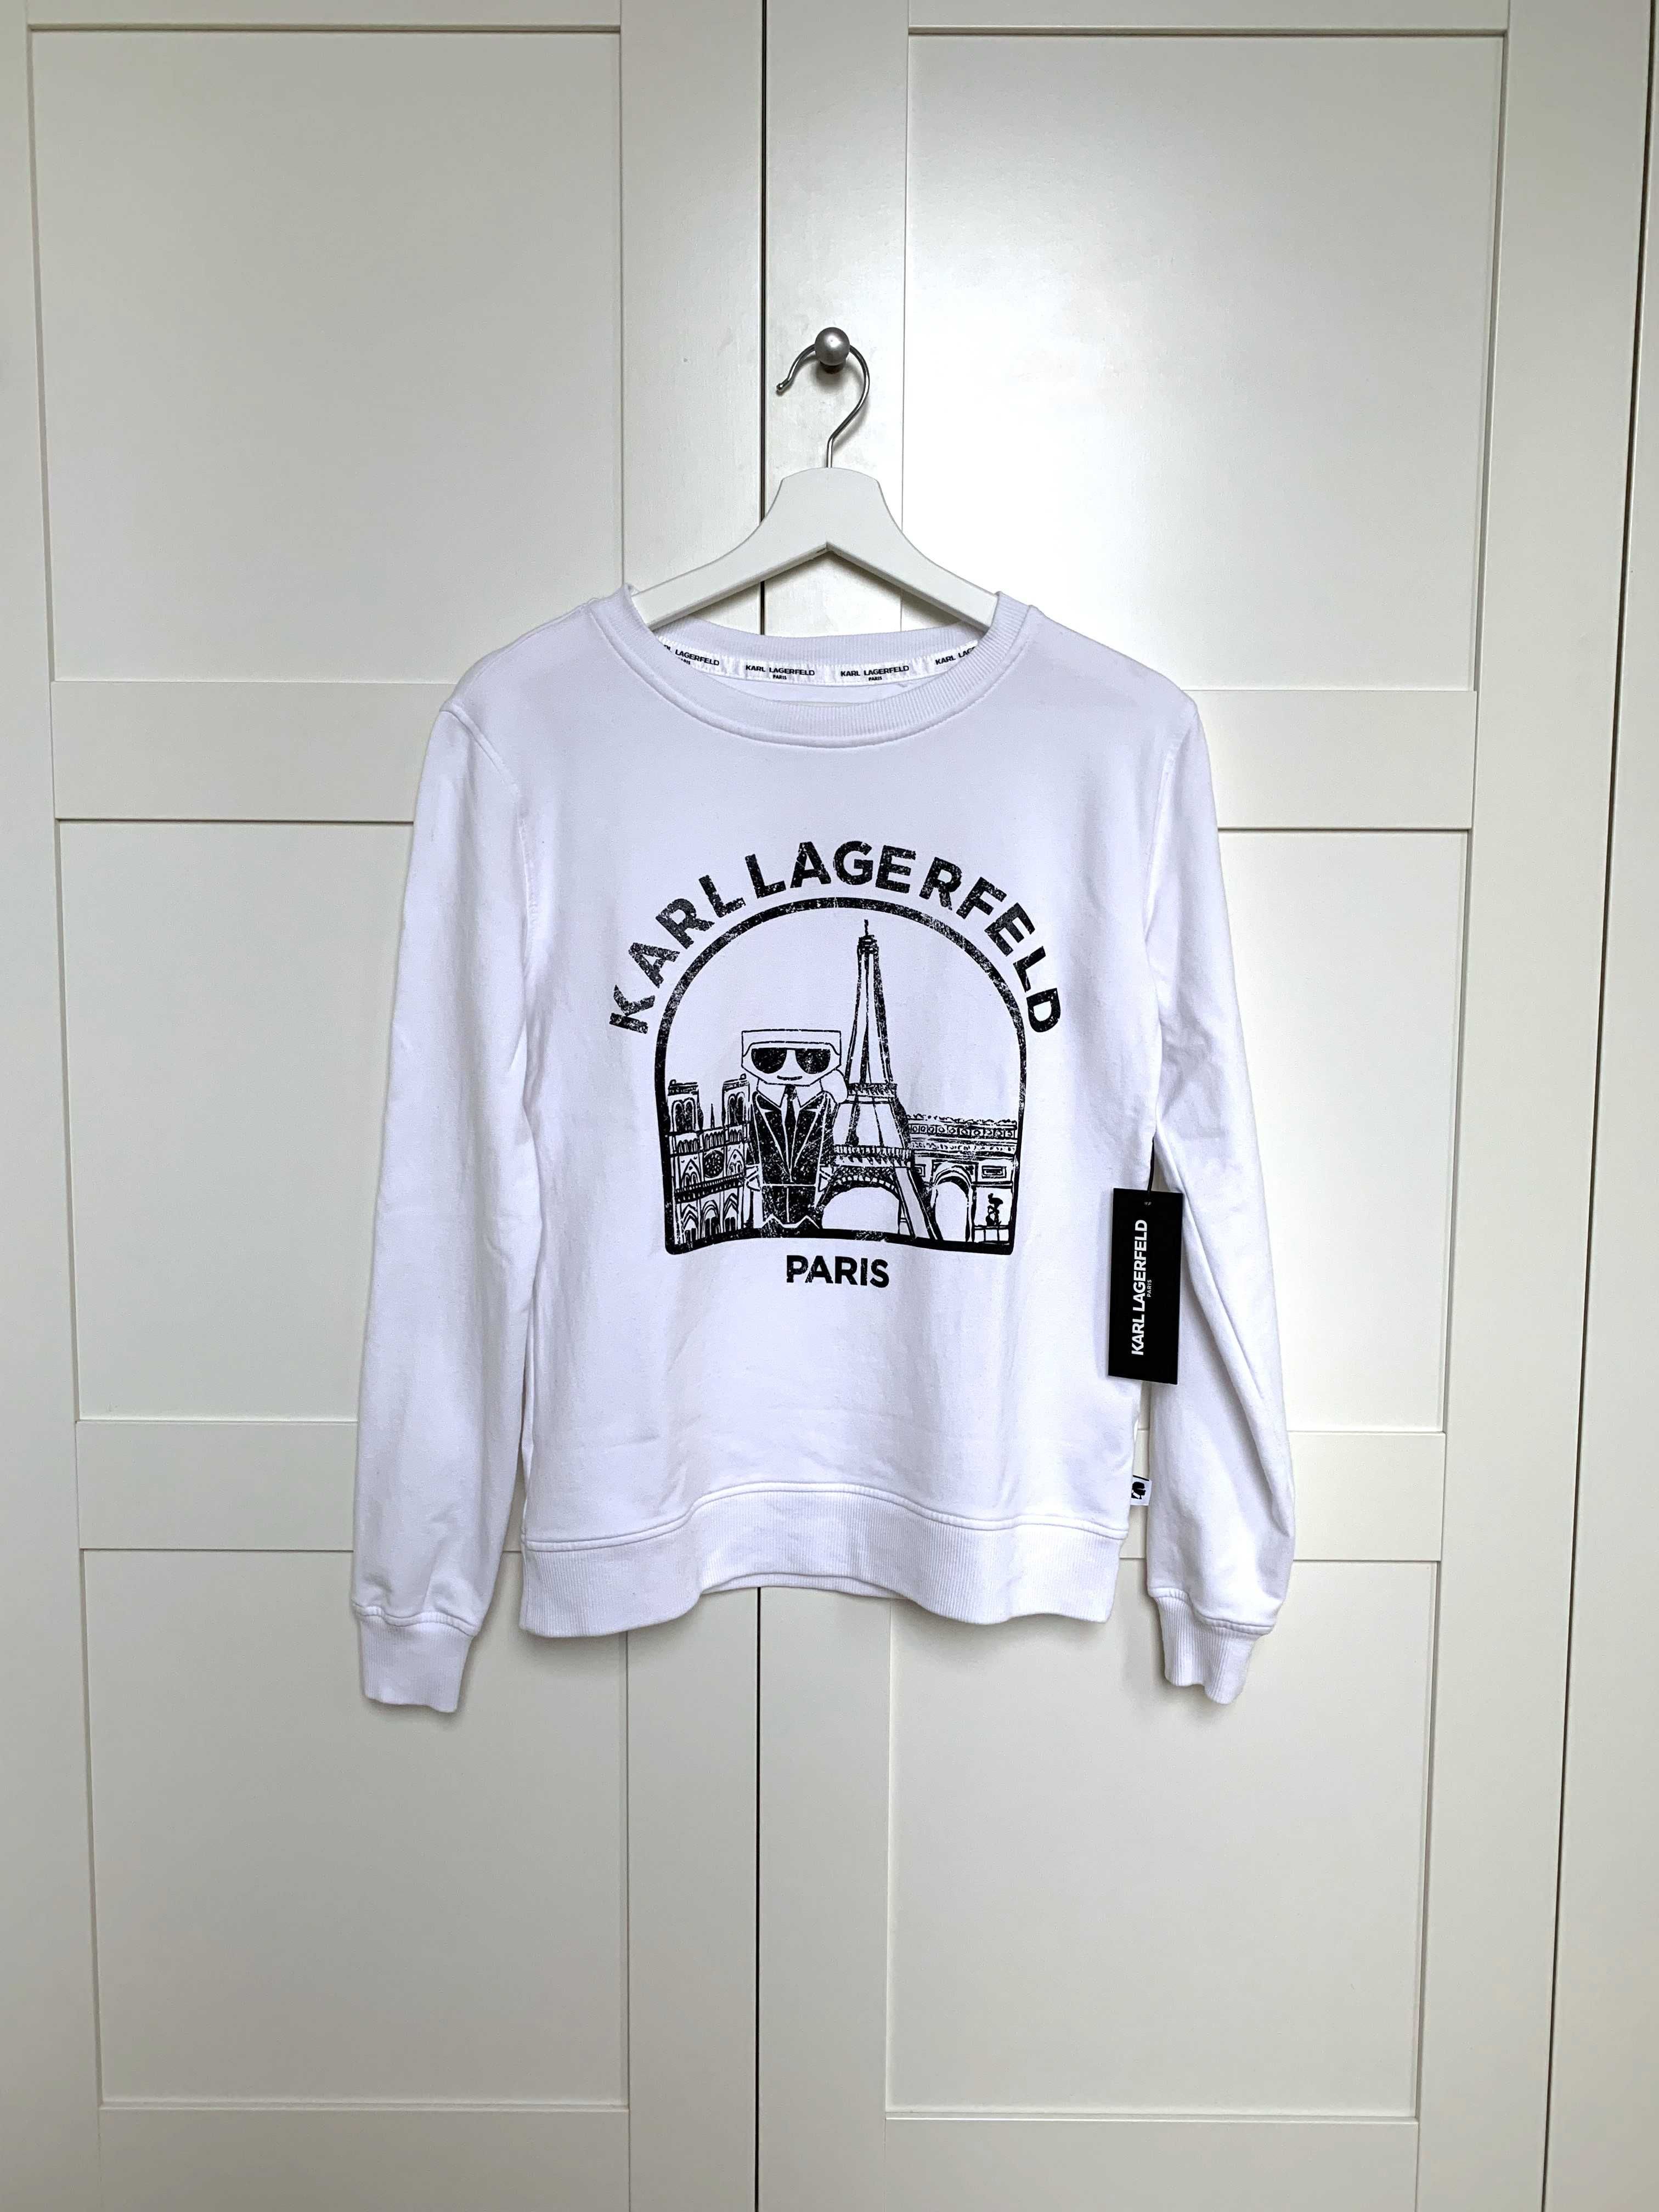 Biała bluza Karl Lagerfeld Paris XXS